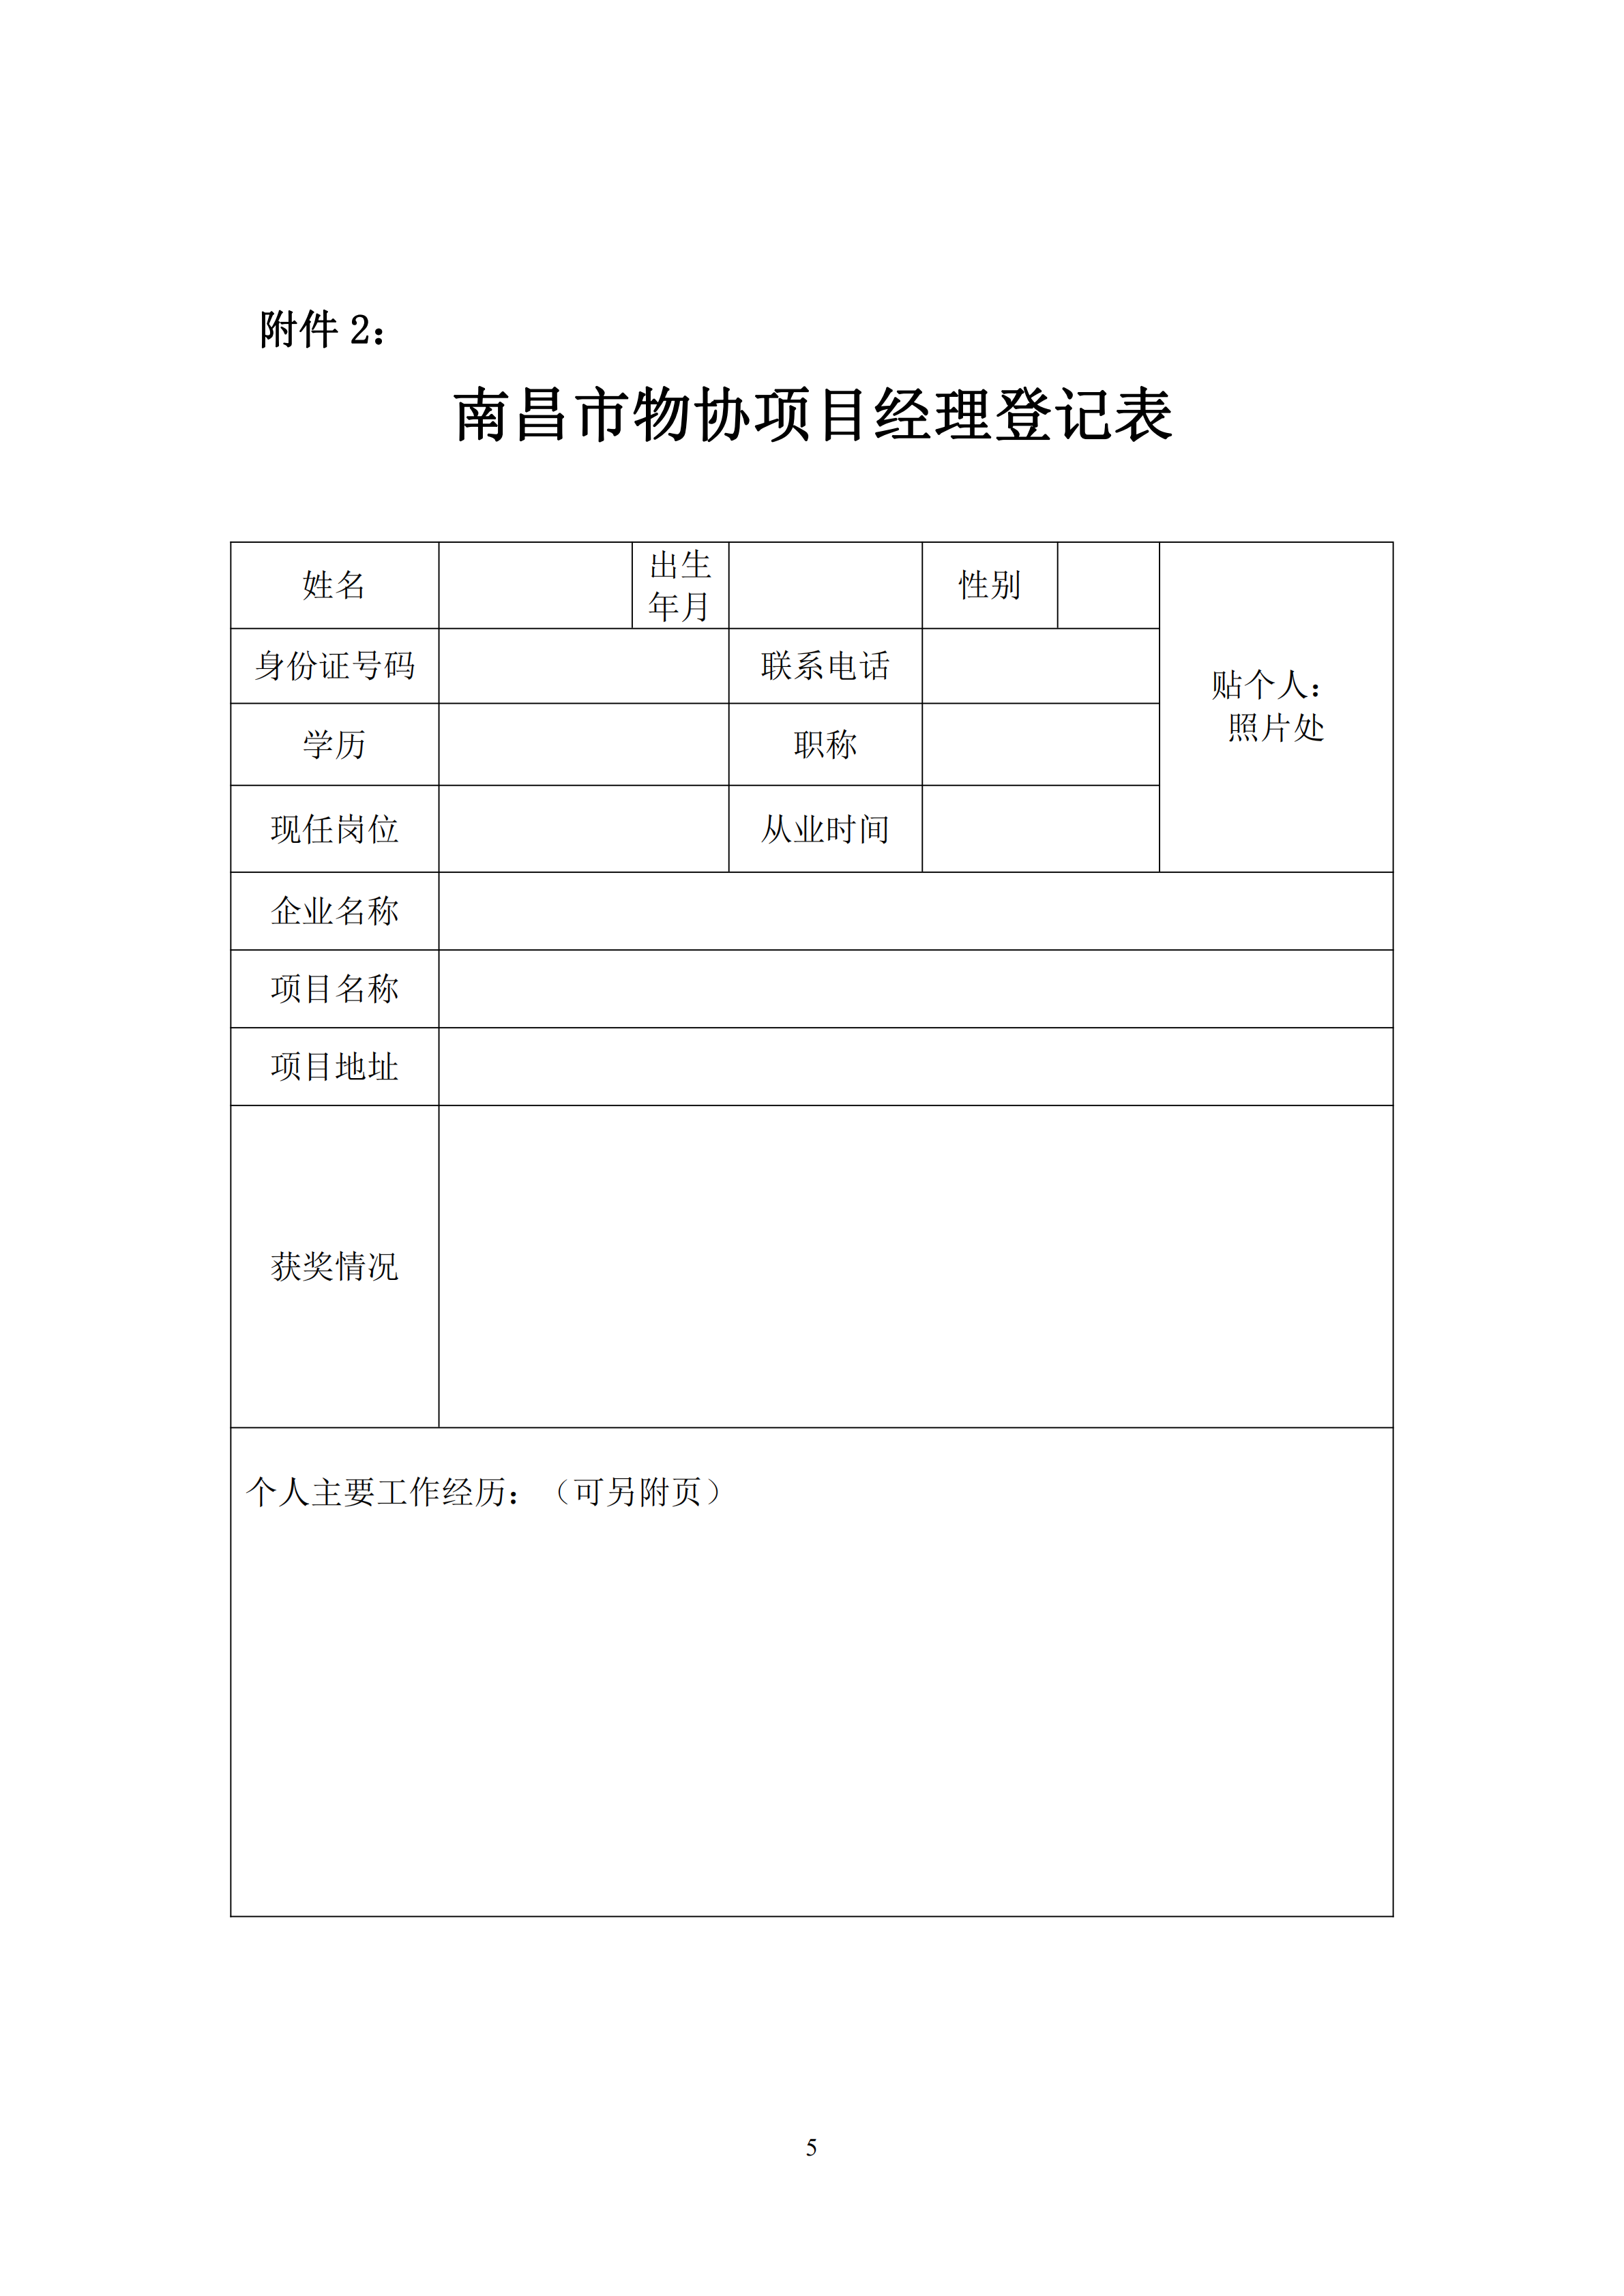 关于举办南昌市物业服务项目经理学习班的通知_04.png